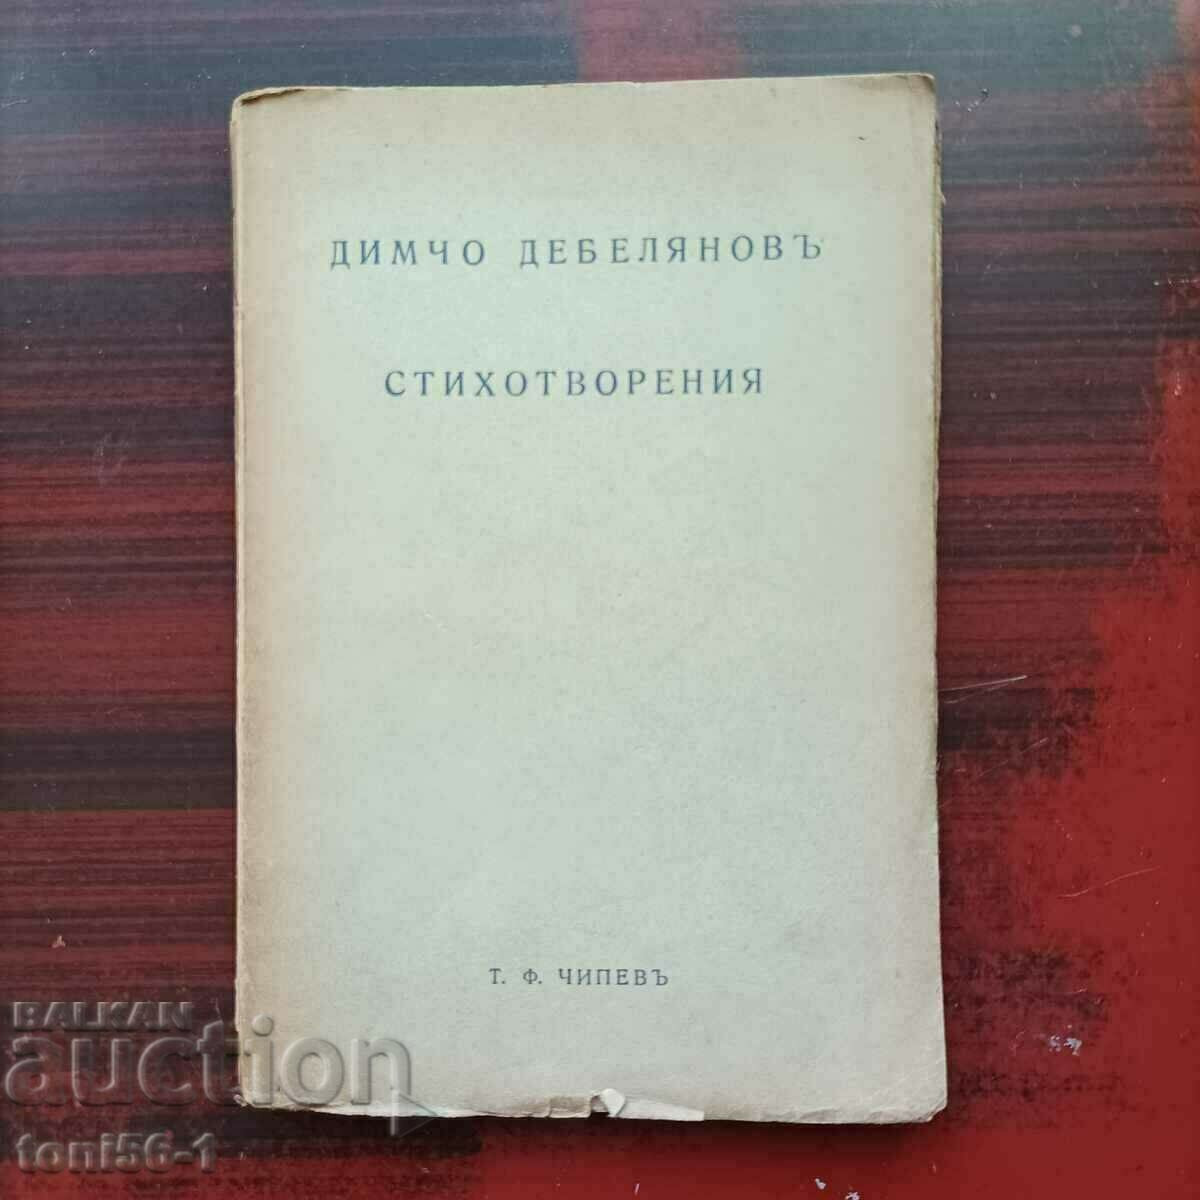 Димчо Дебелянов - "Стихотворения"  1939г